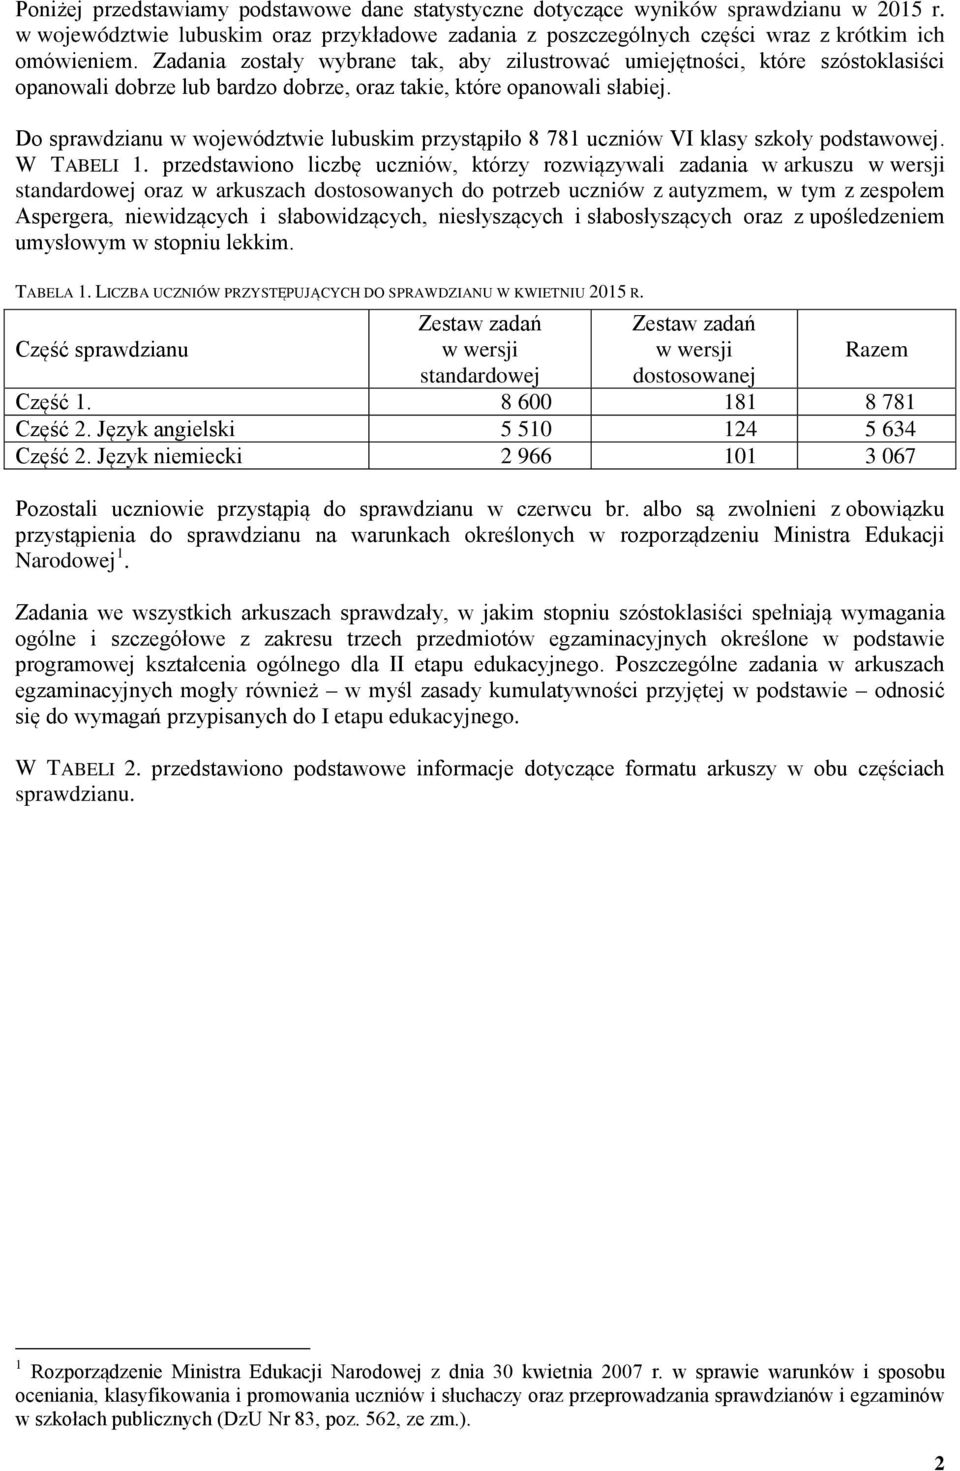 Do sprawdzianu w województwie lubuskim przystąpiło 8 781 uczniów VI klasy szkoły podstawowej. W TABELI 1.